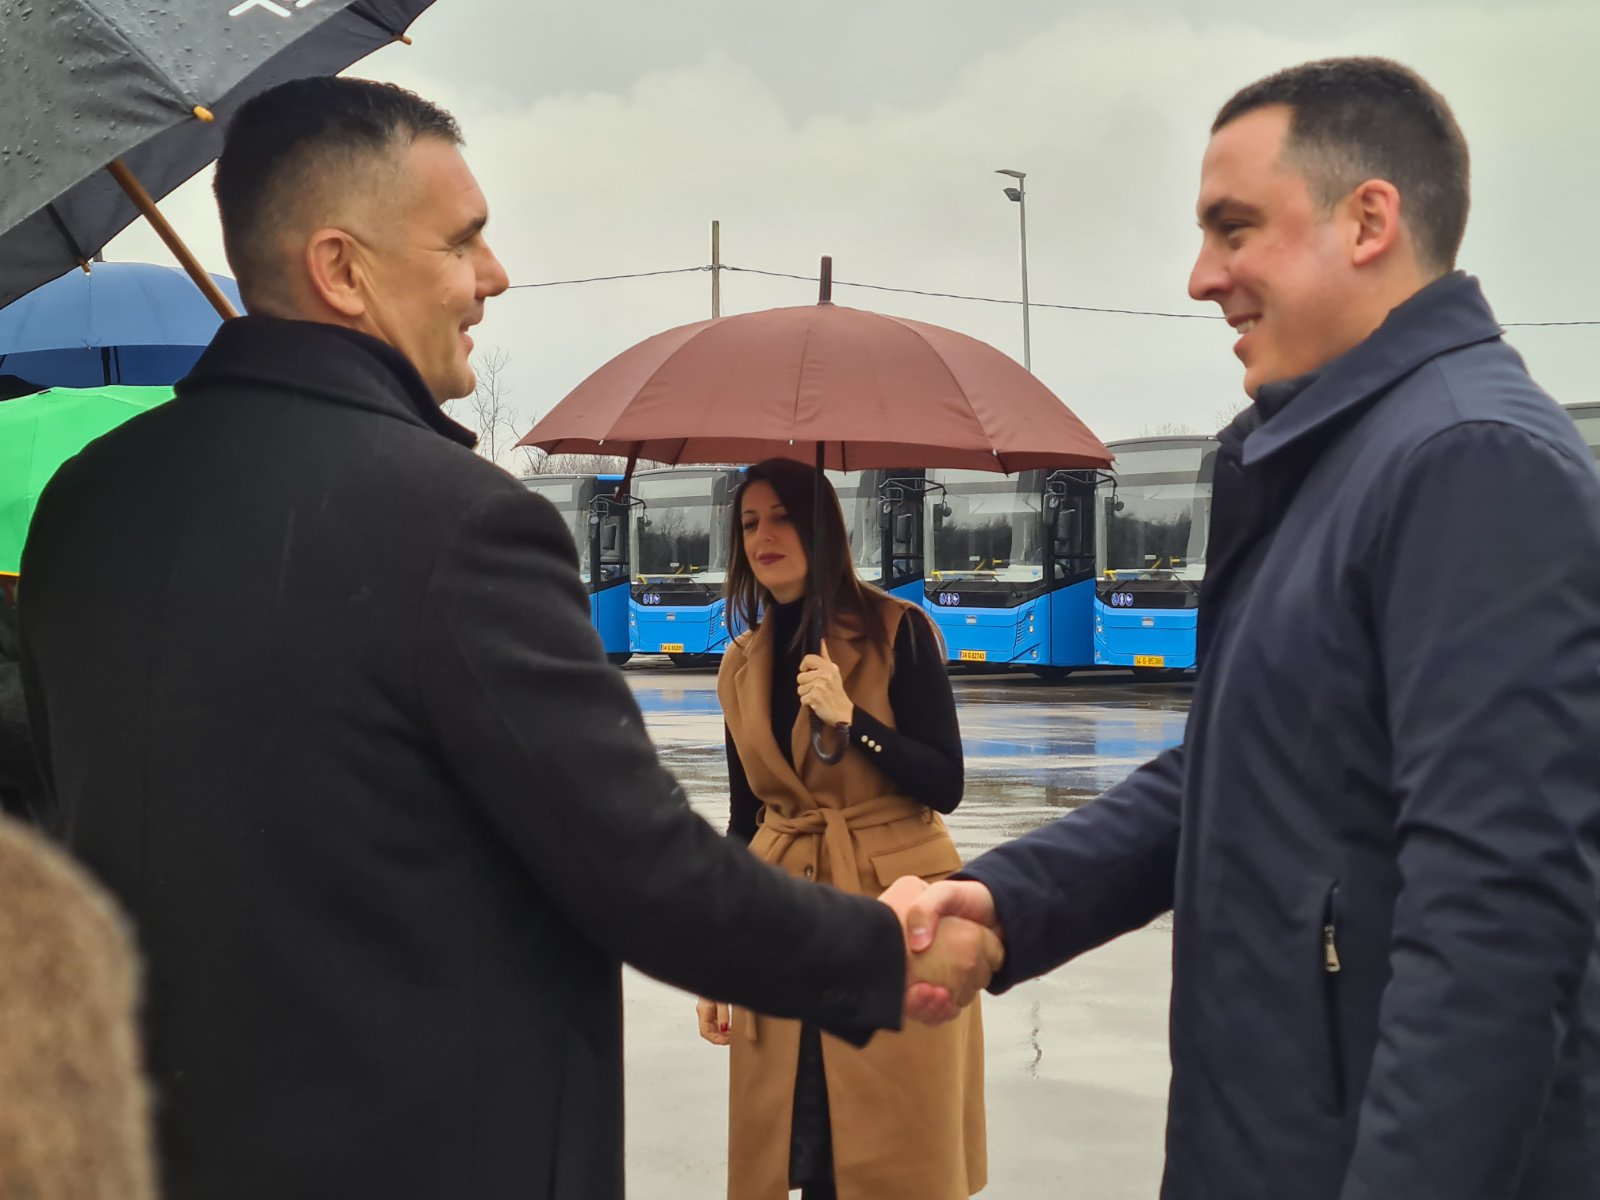 Glavni grad nastavlja da unapređuje javni prevoz; U Podgoricu stigao novi kontingent autobusa